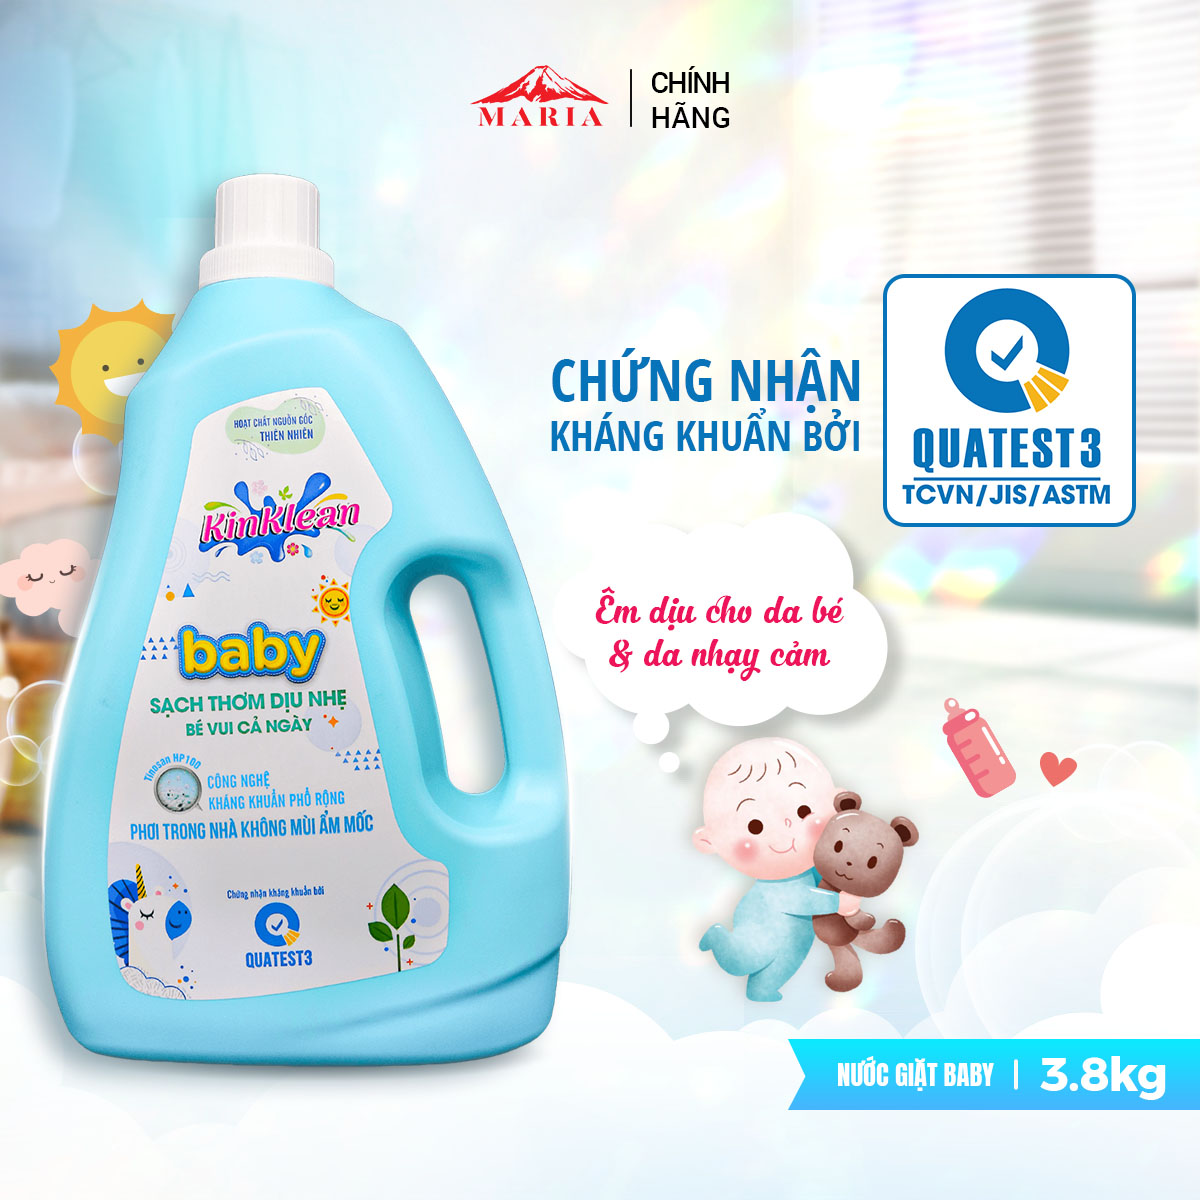 Nước giặt Baby KinKlean kháng khuẩn sạch thơm dịu nhẹ, an toàn da bé